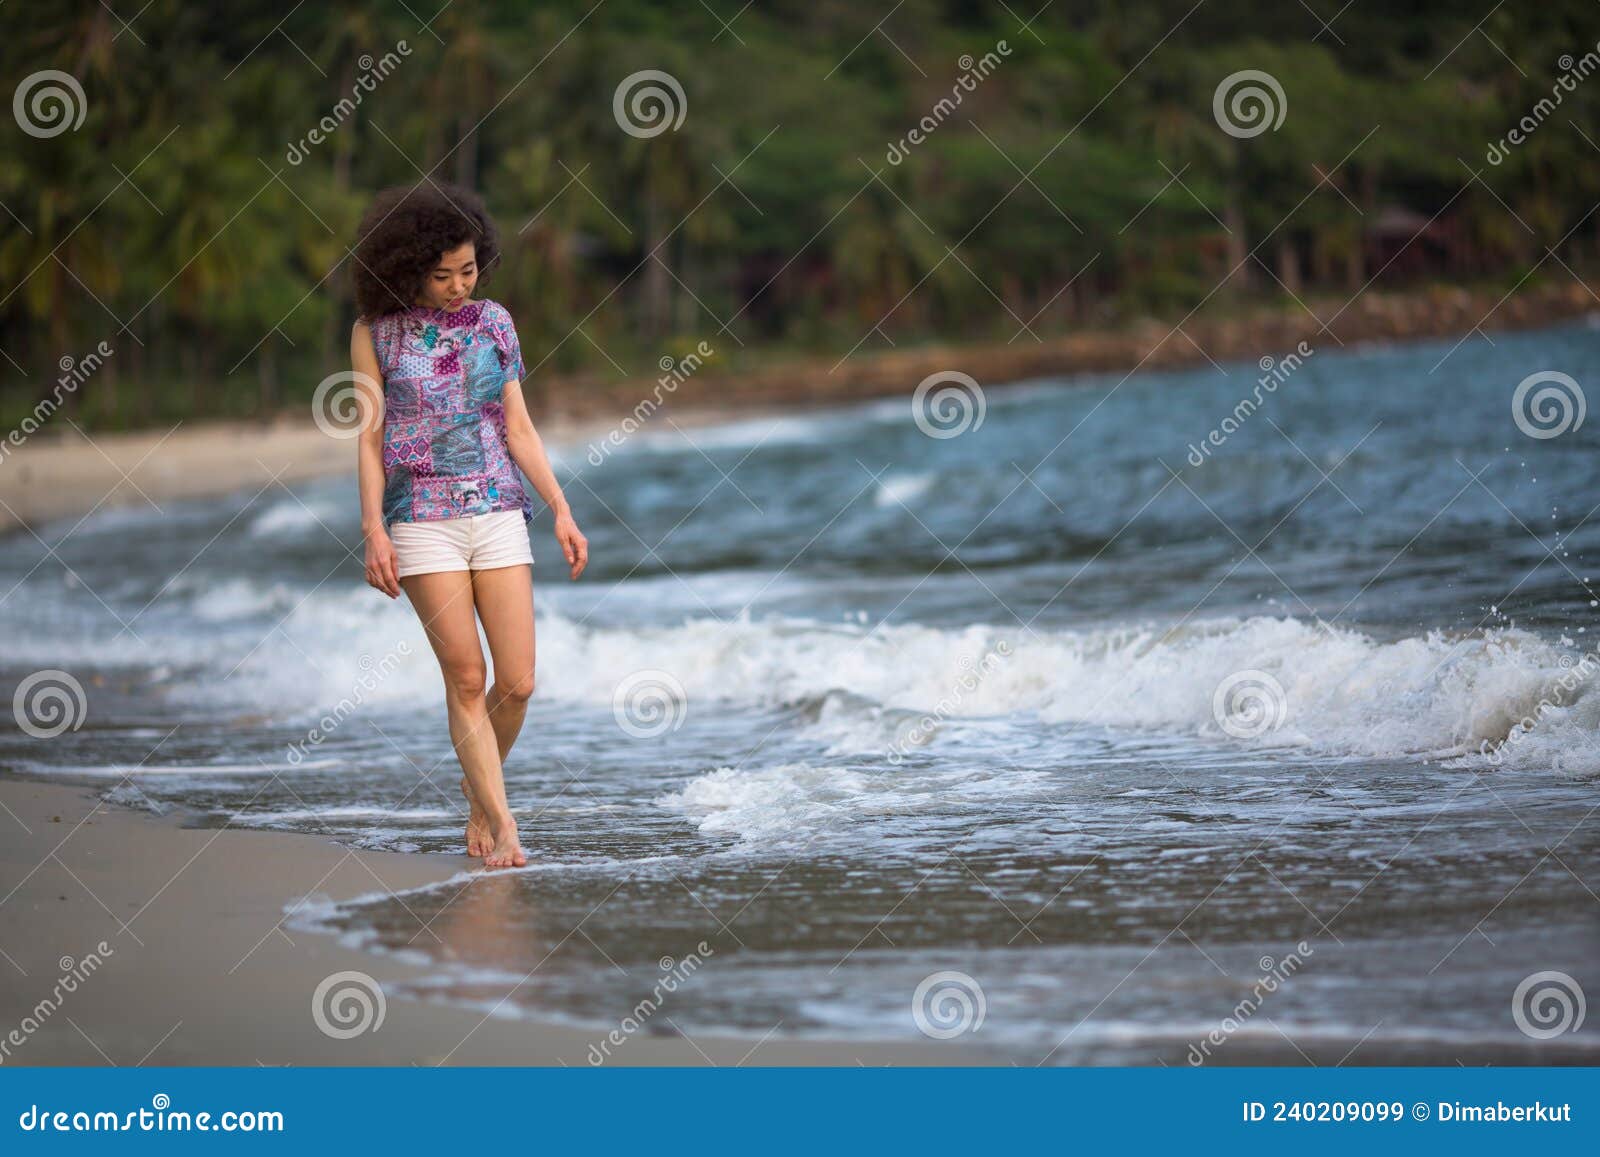 https://thumbs.dreamstime.com/z/una-mujer-mixta-en-la-l%C3%ADnea-de-surf-camina-por-playa-mar-el-tr%C3%B3pico-240209099.jpg